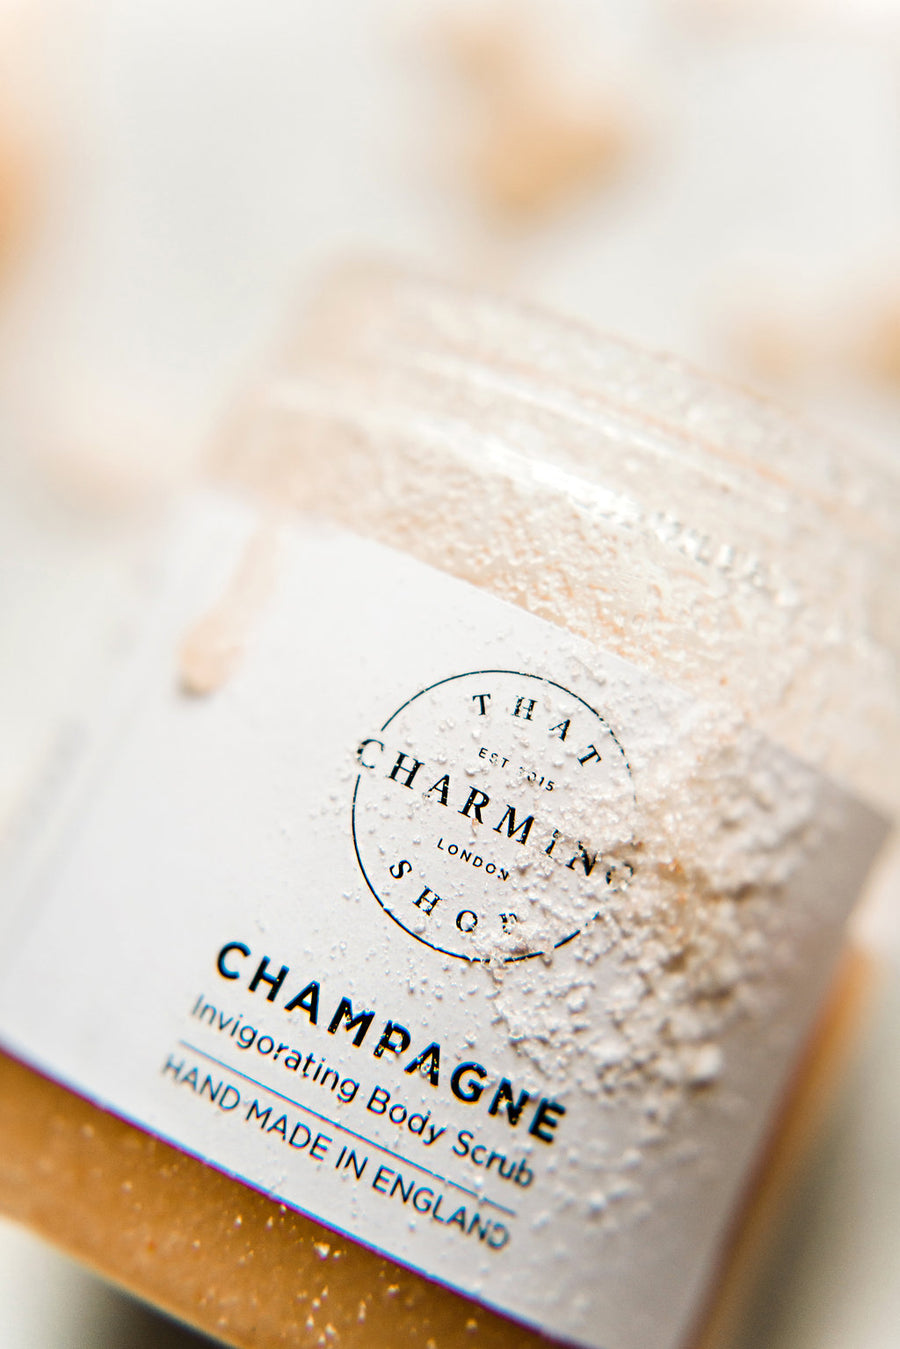 Champagne Body Scrub - That Charming Shop - Wedding Body Scrub